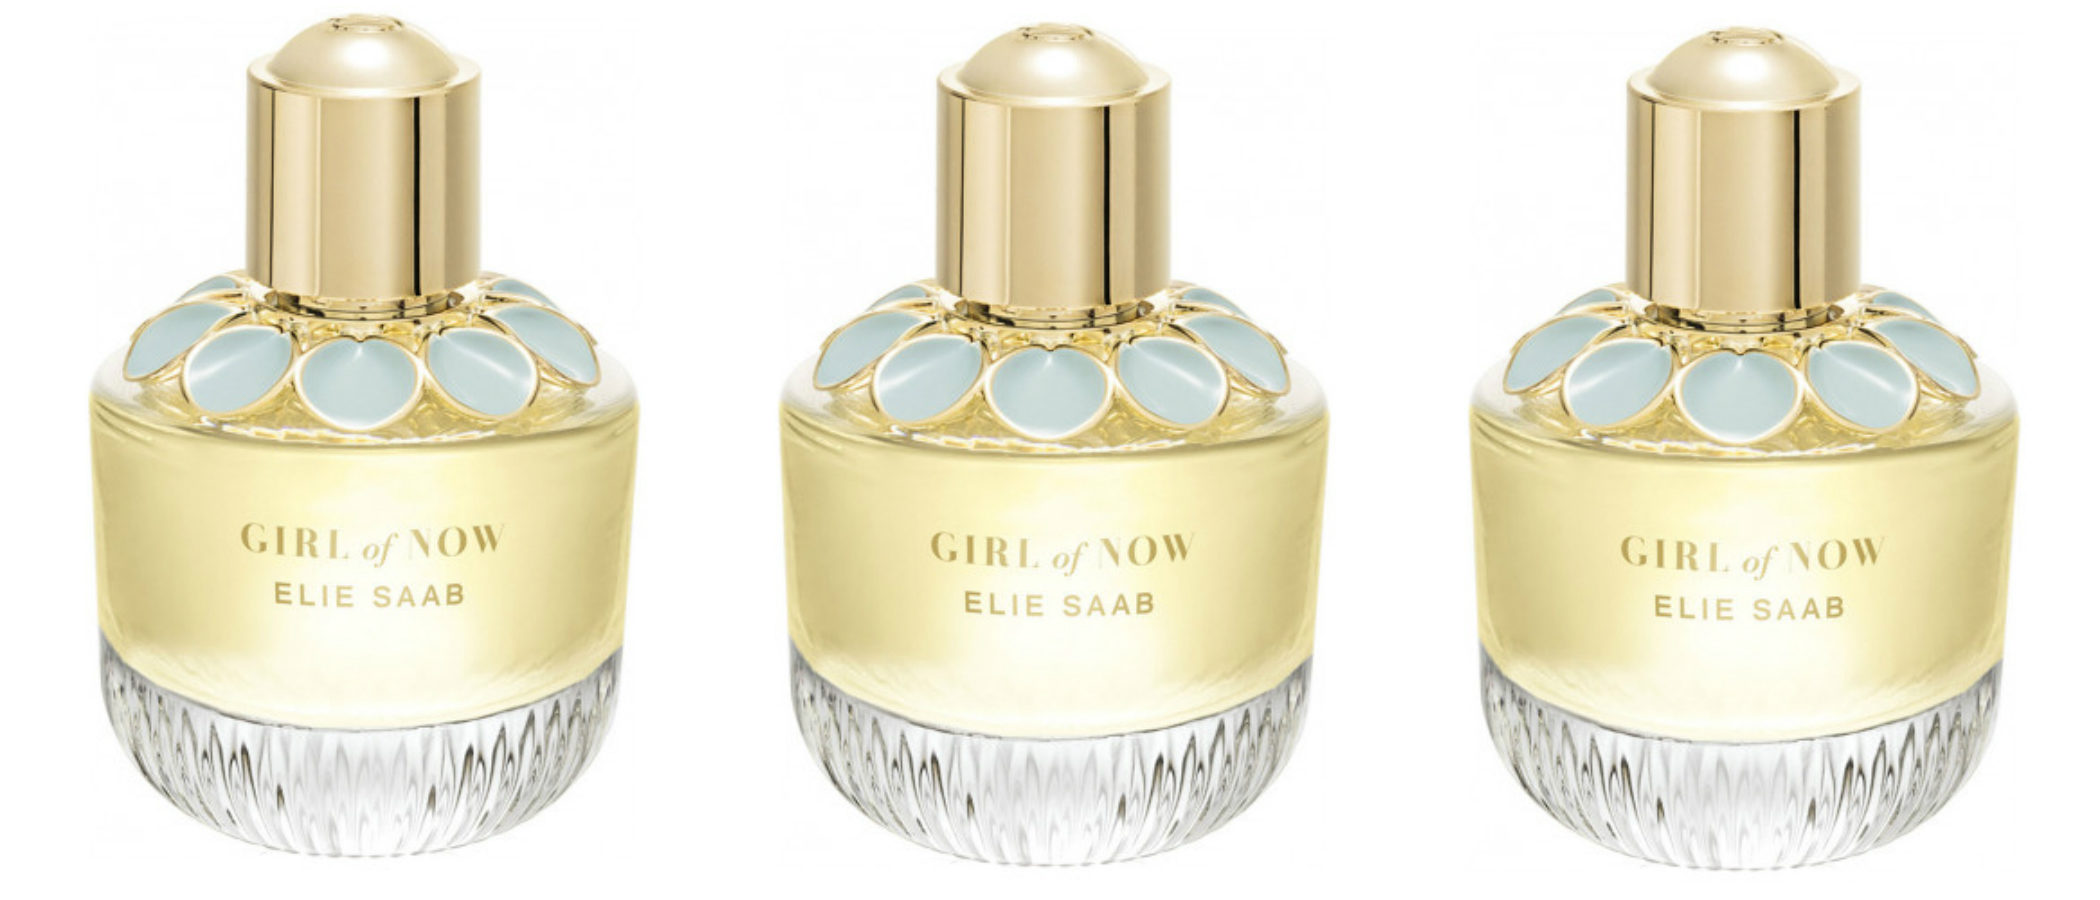 Elie Saab estrena nueva línea de perfumes: 'Girl of Now'